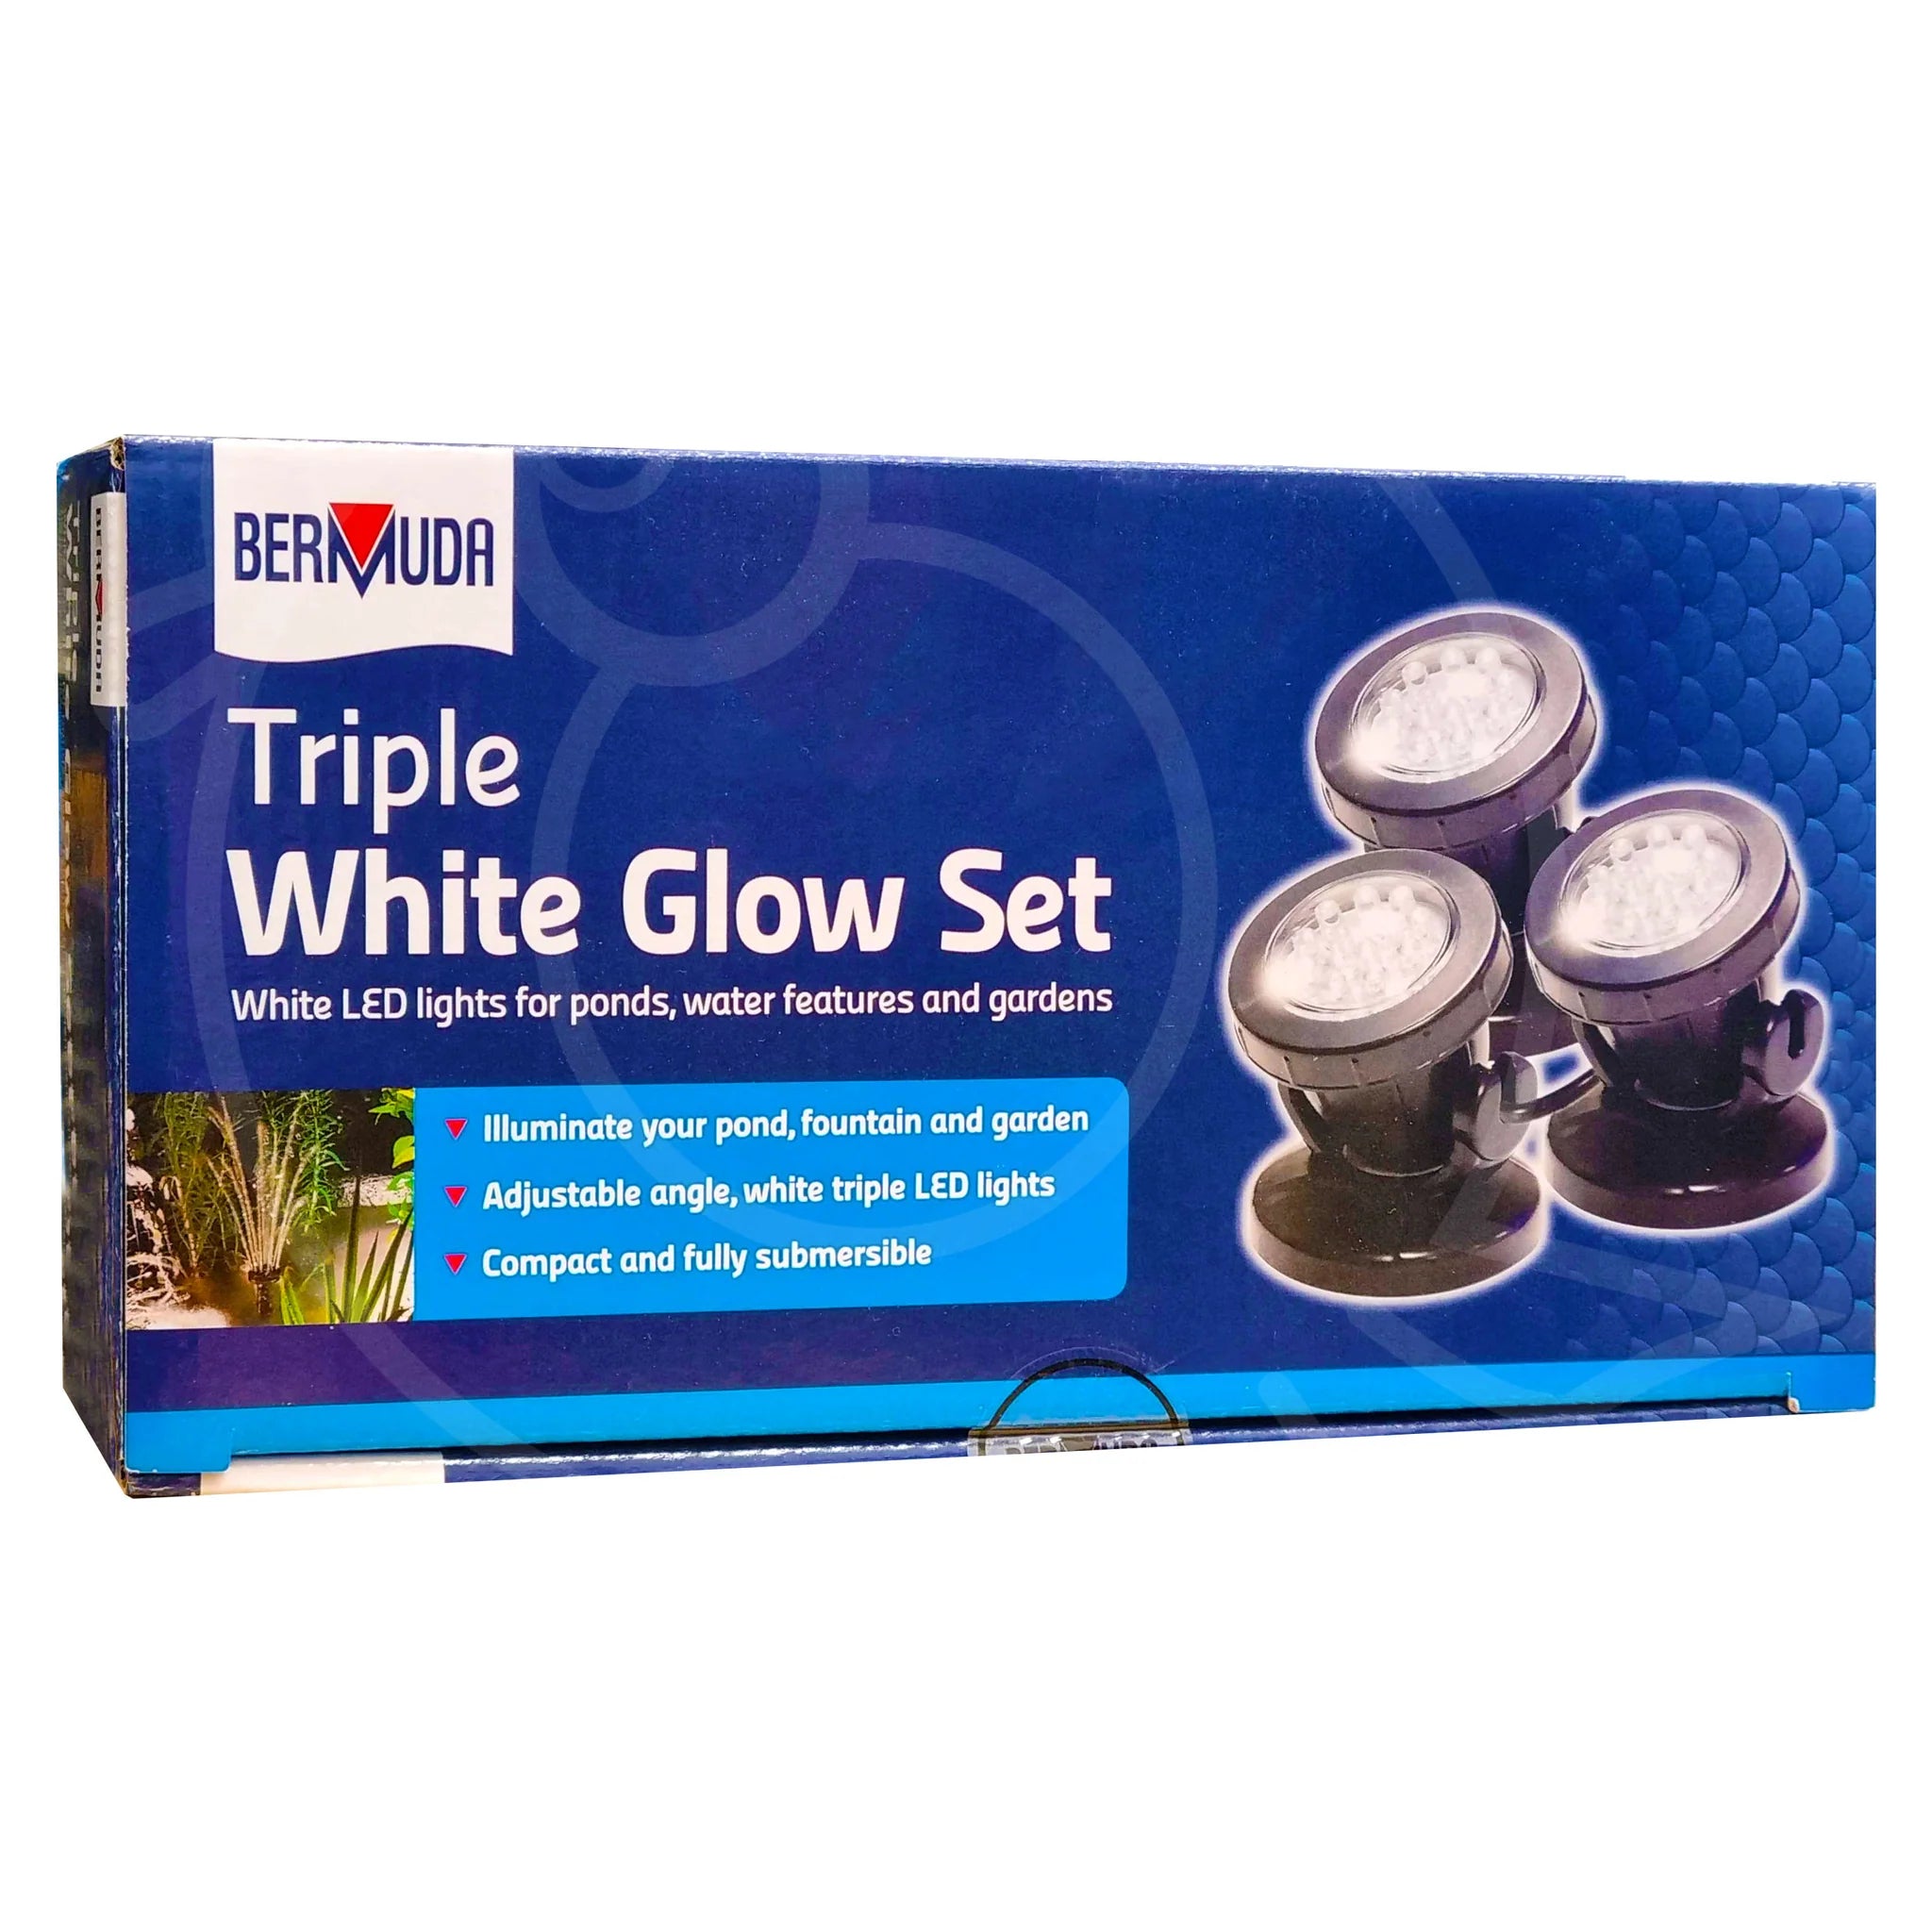 Bermuda Triple White LED Glow Set